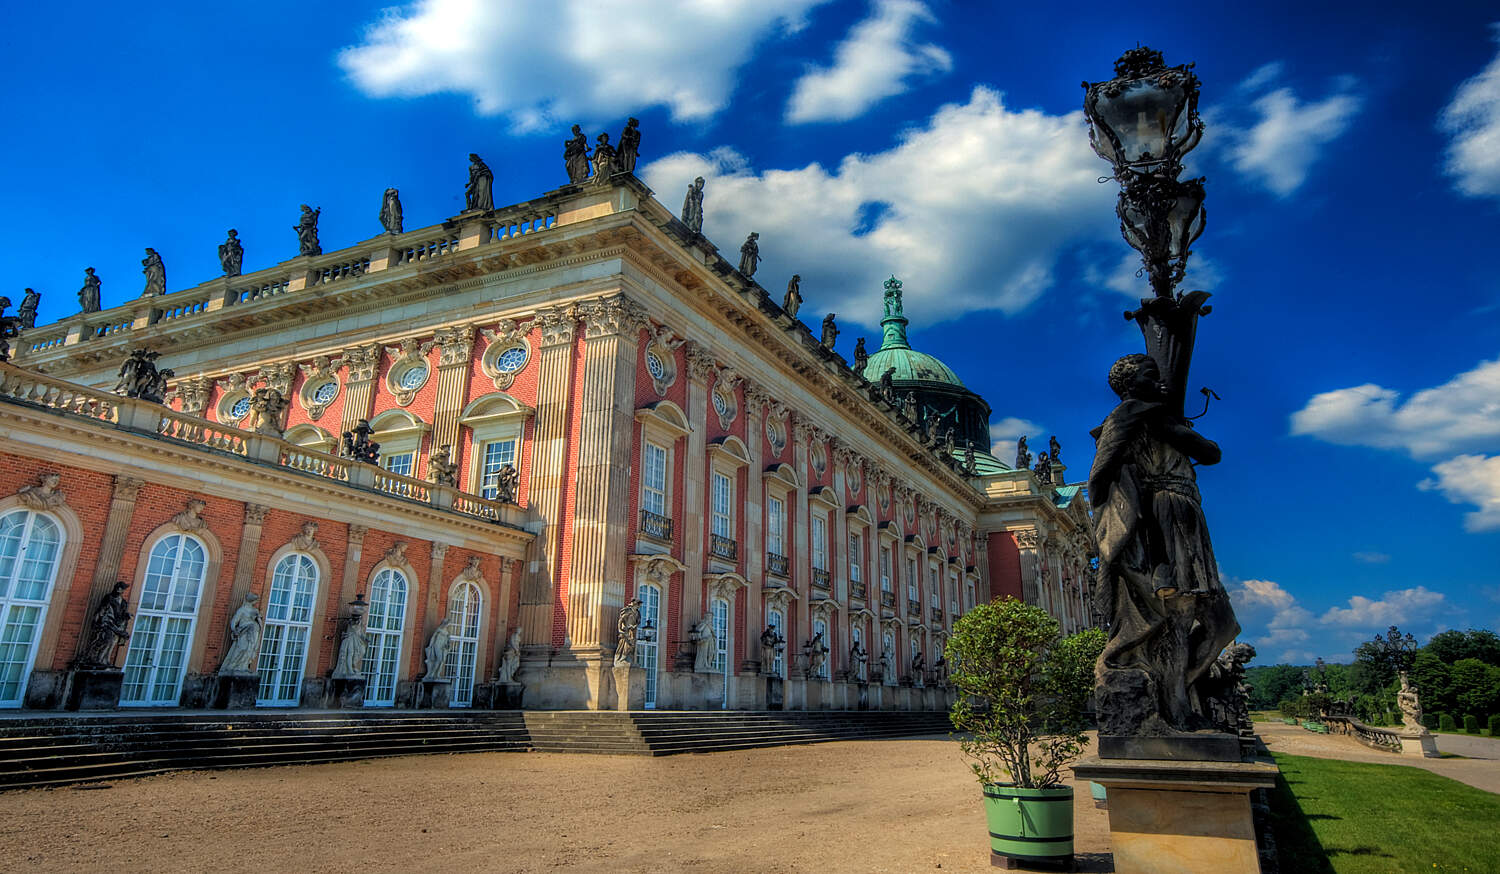 Neuer Garten Potsdam Neu New Palace – Potsdam – tourist attractions Tropter